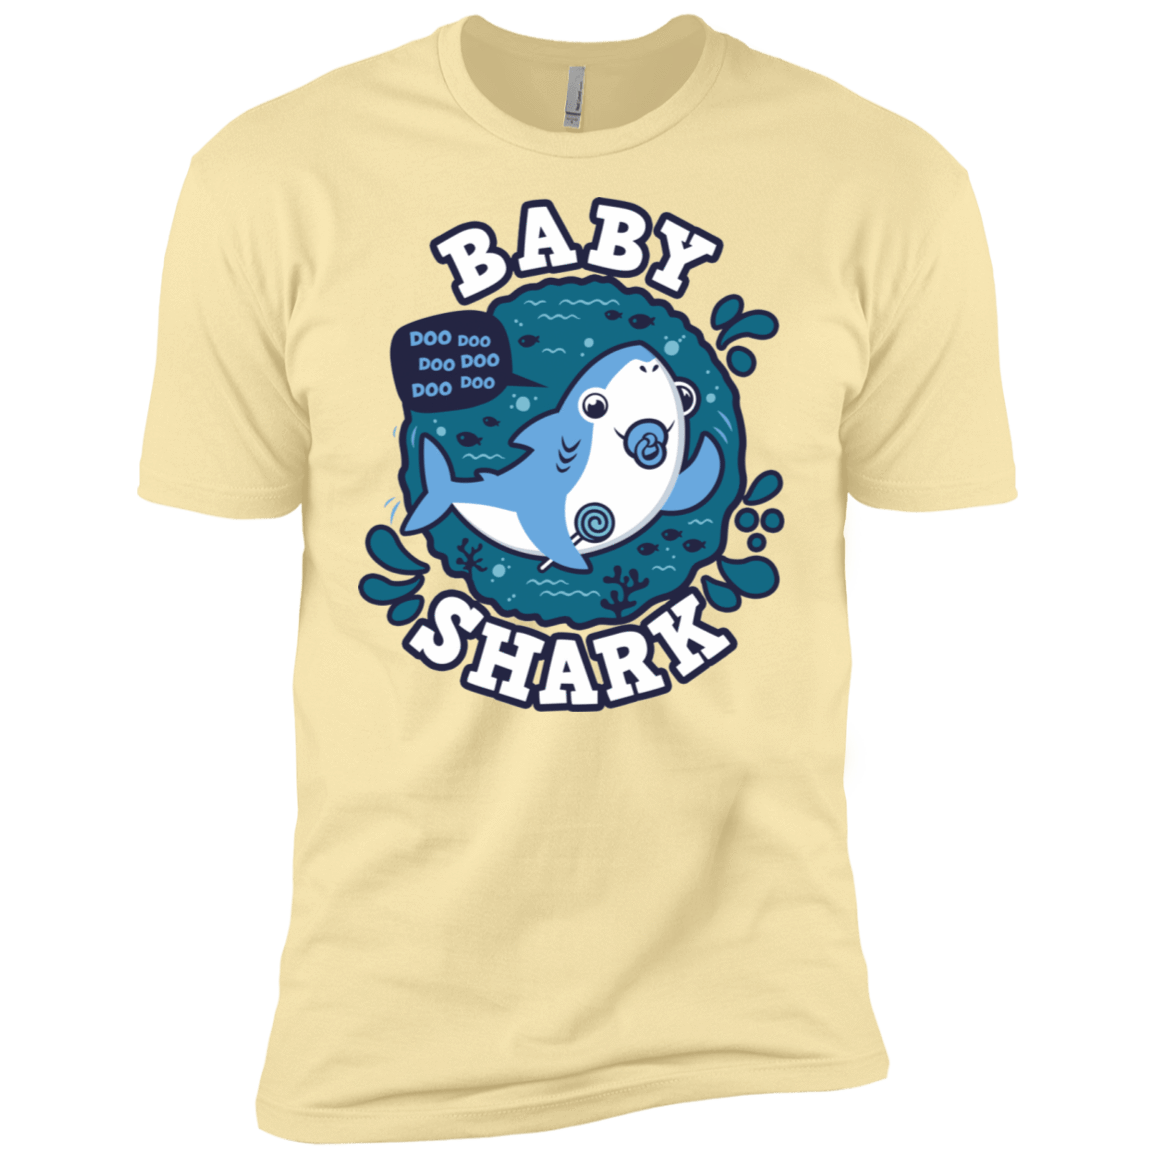 T-Shirts Banana Cream / X-Small Shark Family trazo - Baby Boy chupete Men's Premium T-Shirt